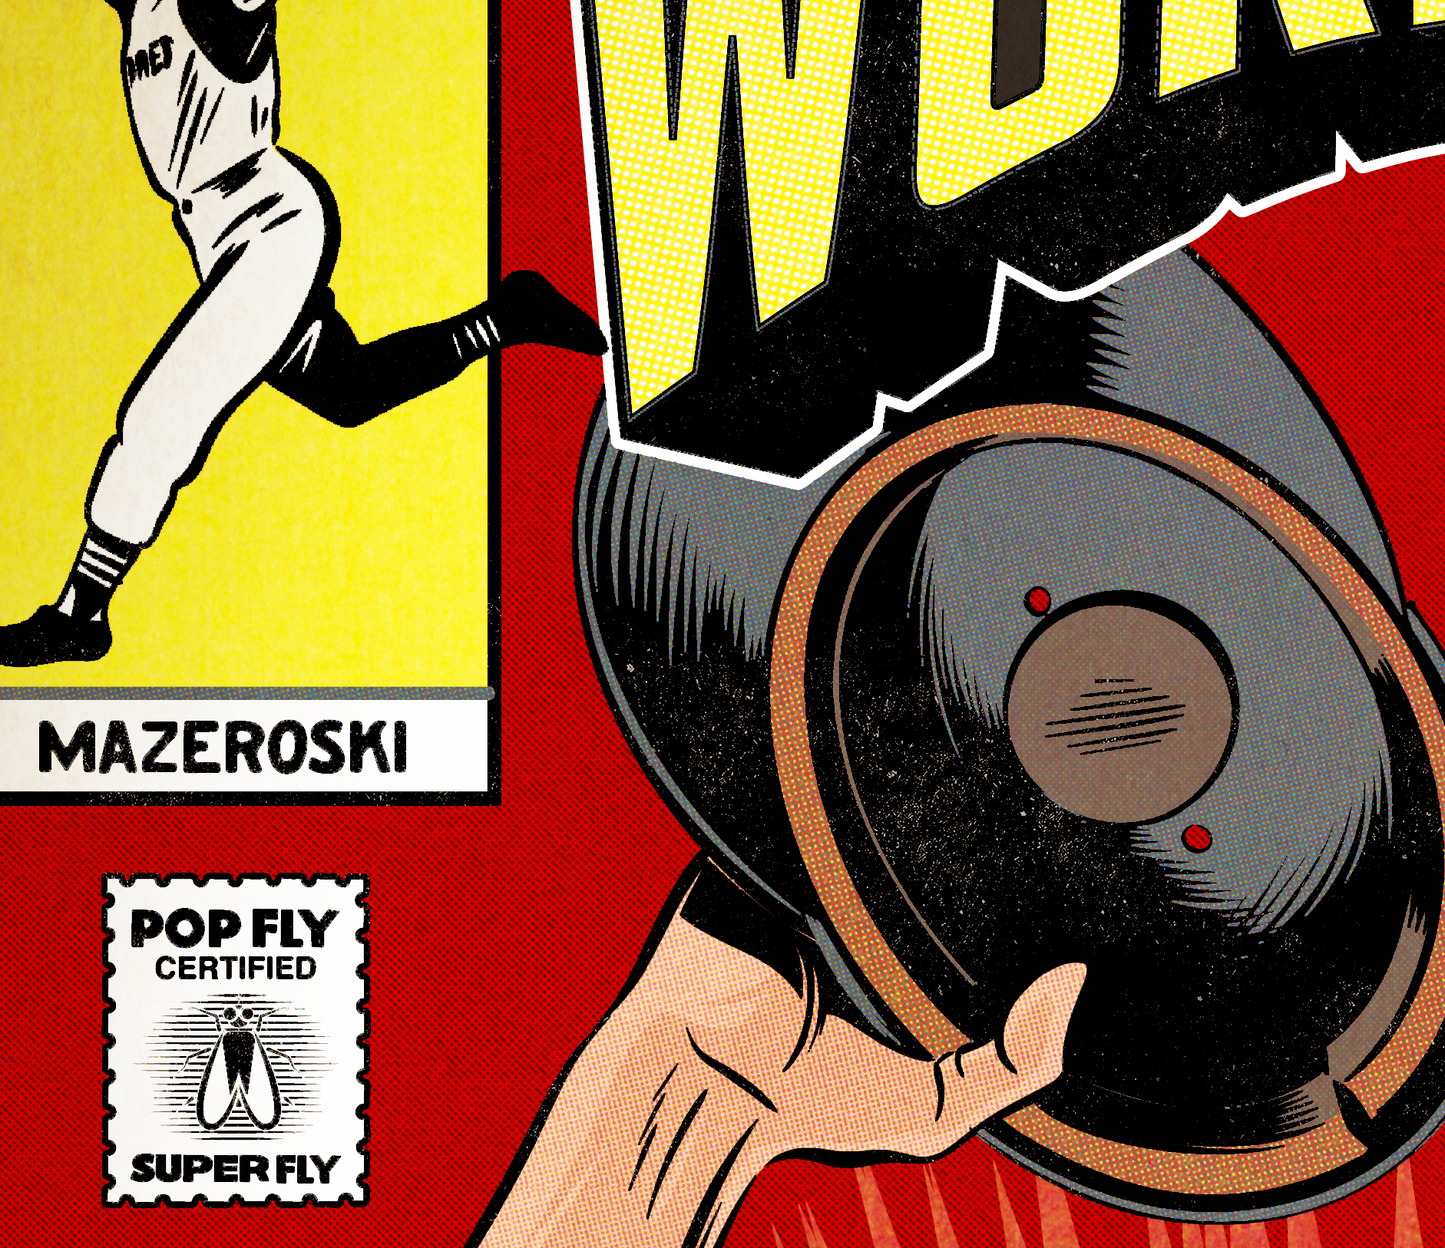 152. "World Series 60: The Mazeroski Moment" 7" x 10.5" Art Print